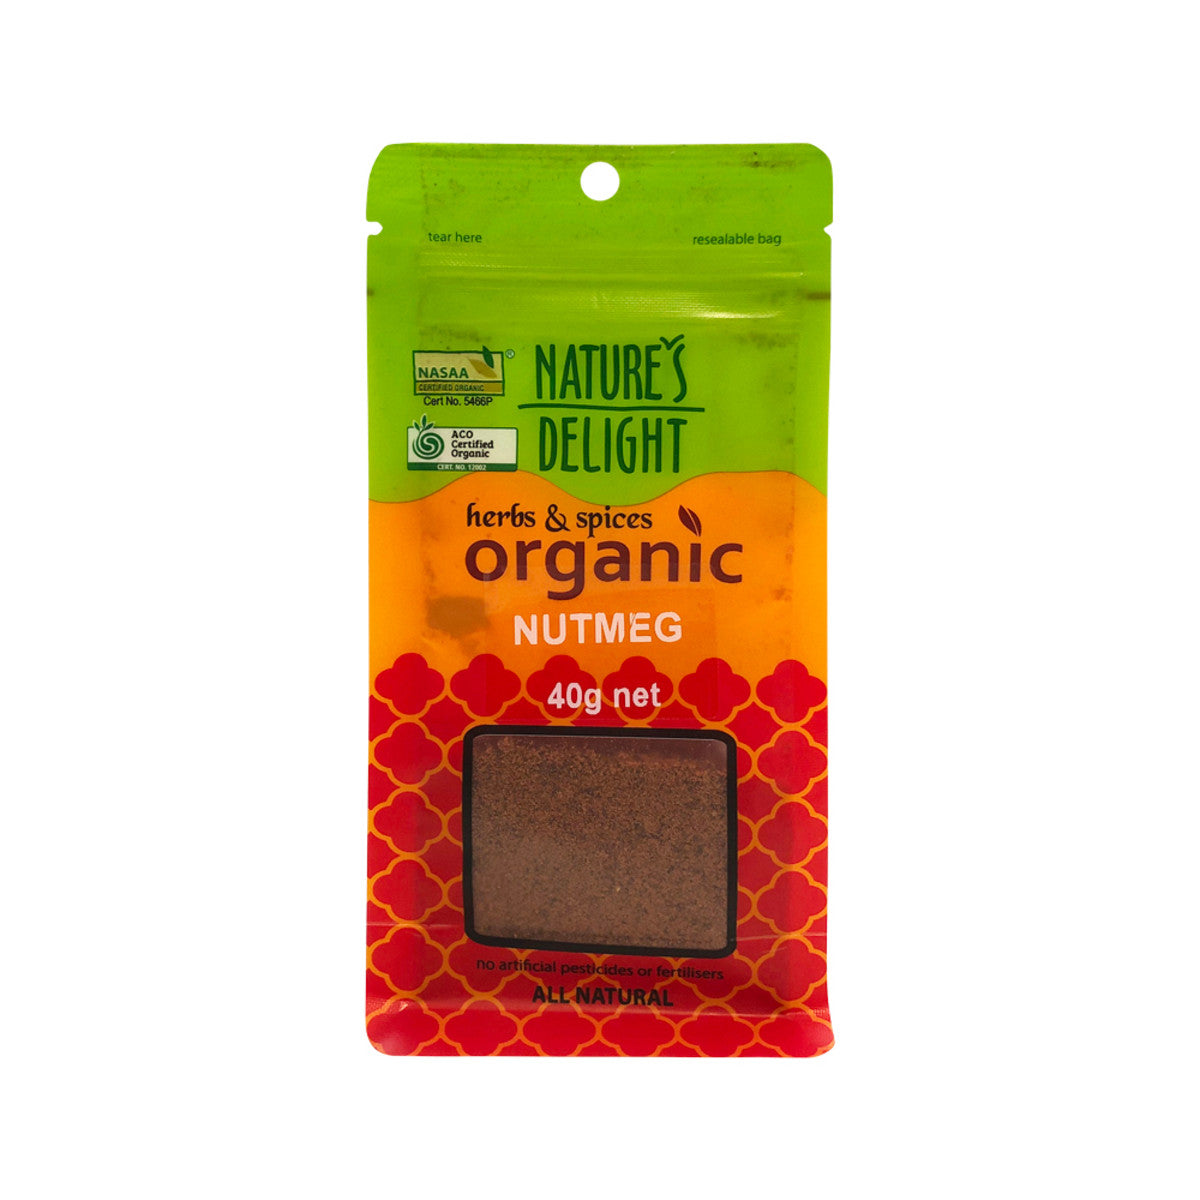 NATURE'S DELIGHT Organic Nutmeg 40g